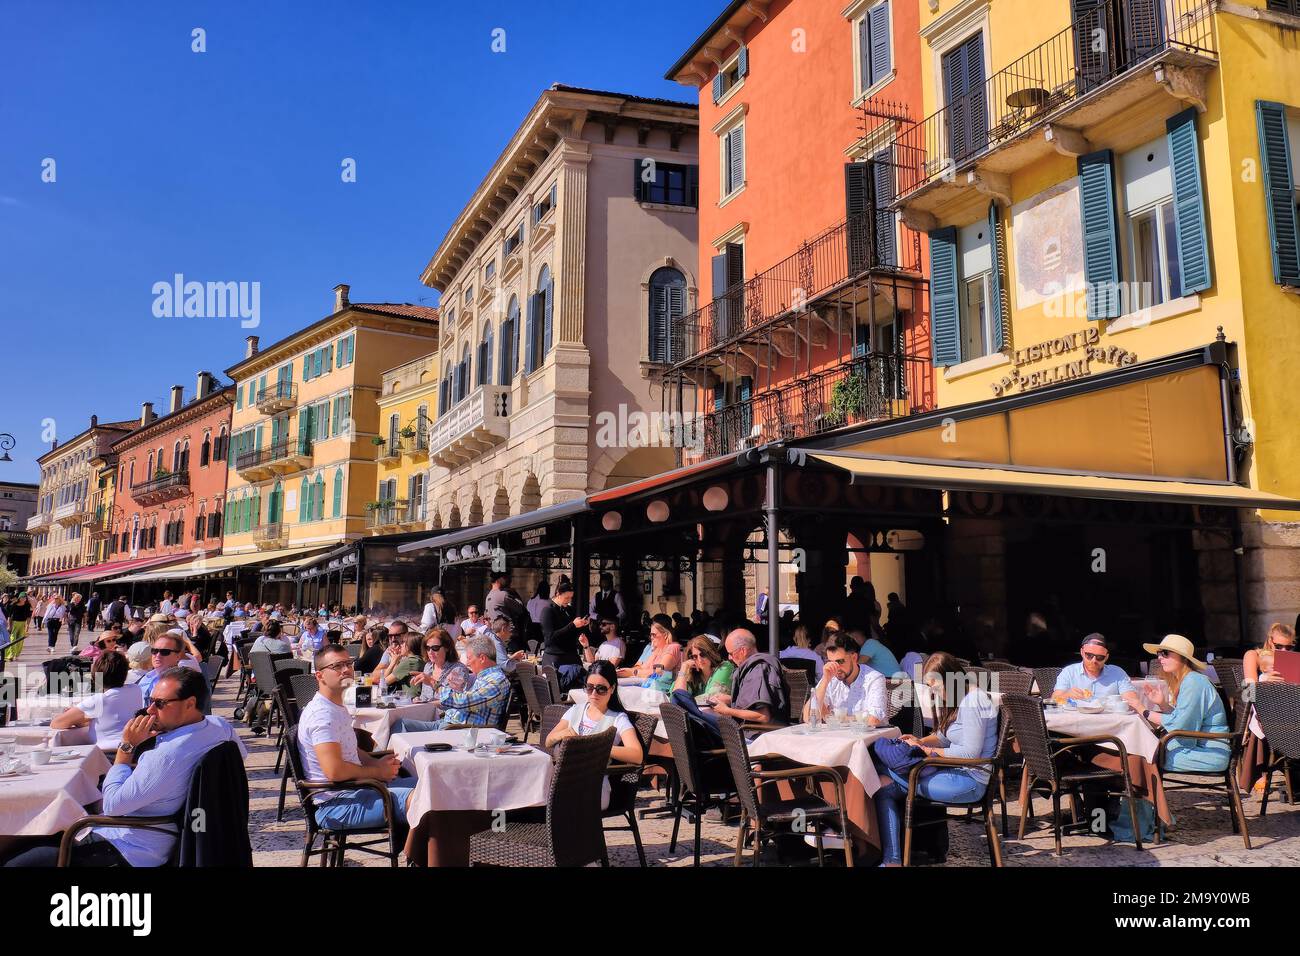 Verona: Edificios coloridos con gente comiendo en restaurantes en Piazza Bra, Verona, Veneto, Italia Foto de stock